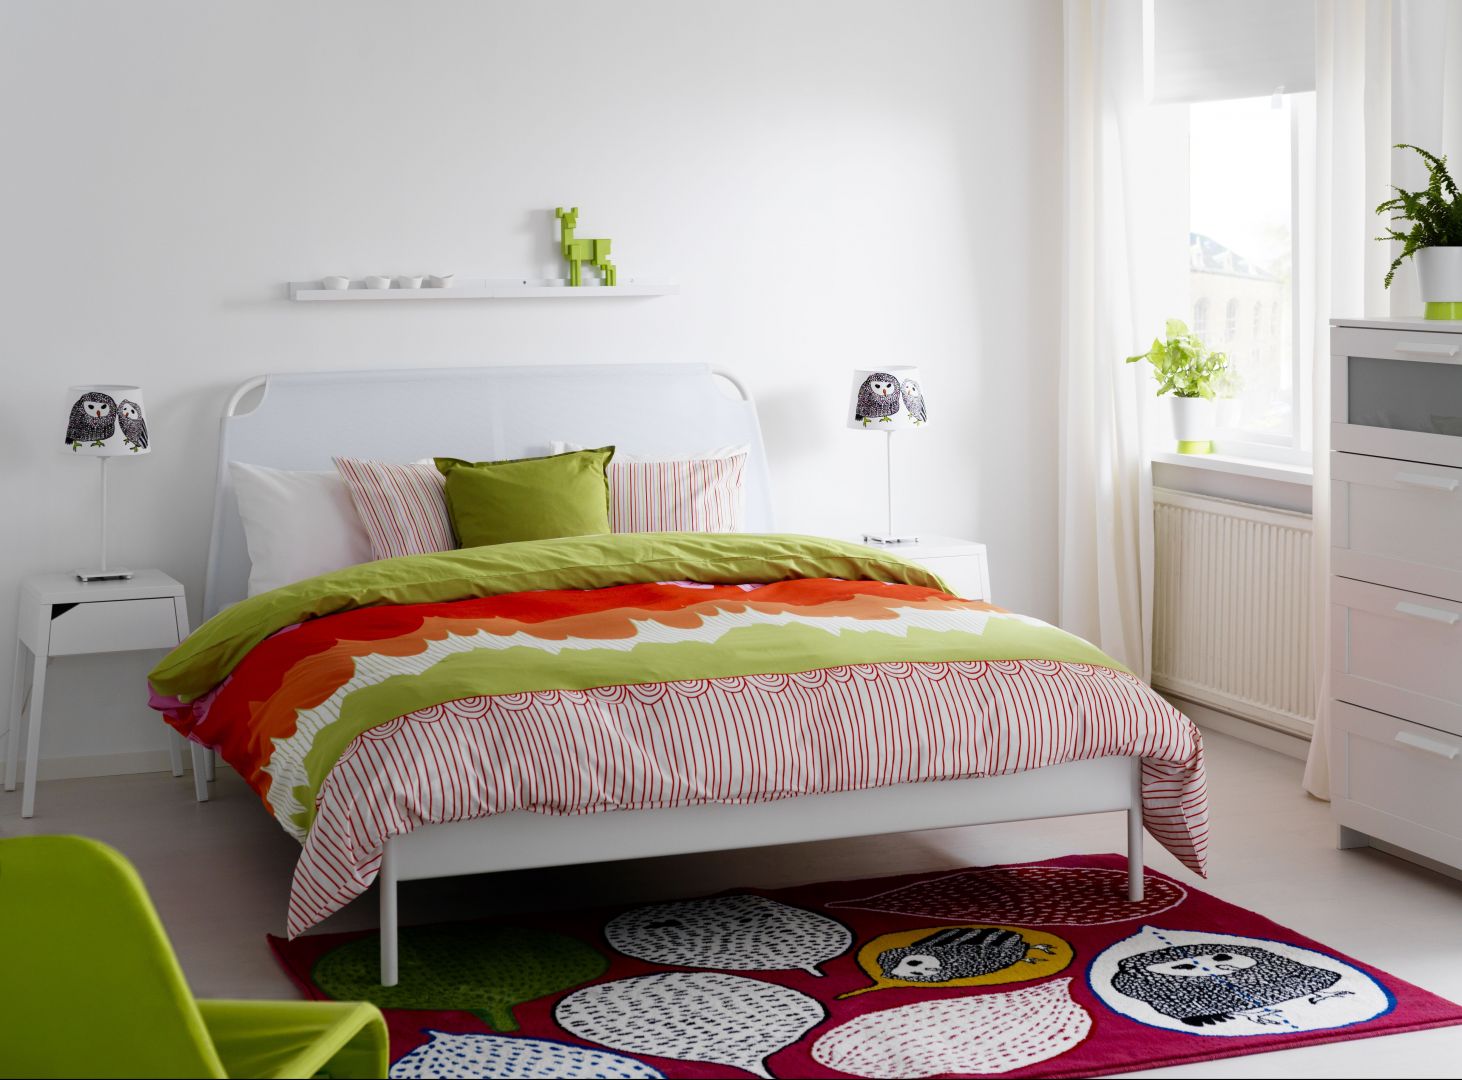 Stalowe łóżko Duken, z miękkim zagłówkiem, wykonanym w materiale, marki IKEA
Fot. IKEA